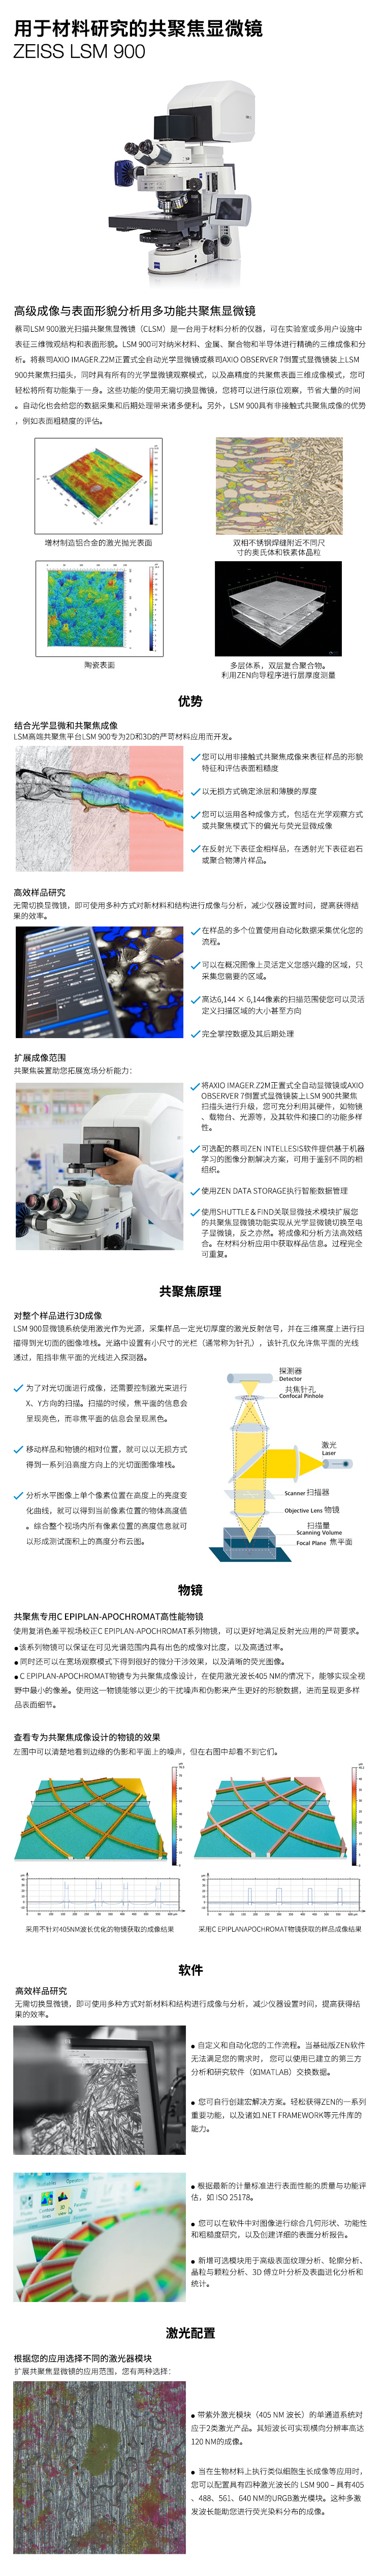 蔡司共聚焦顯微鏡LSM 900激光顯微鏡